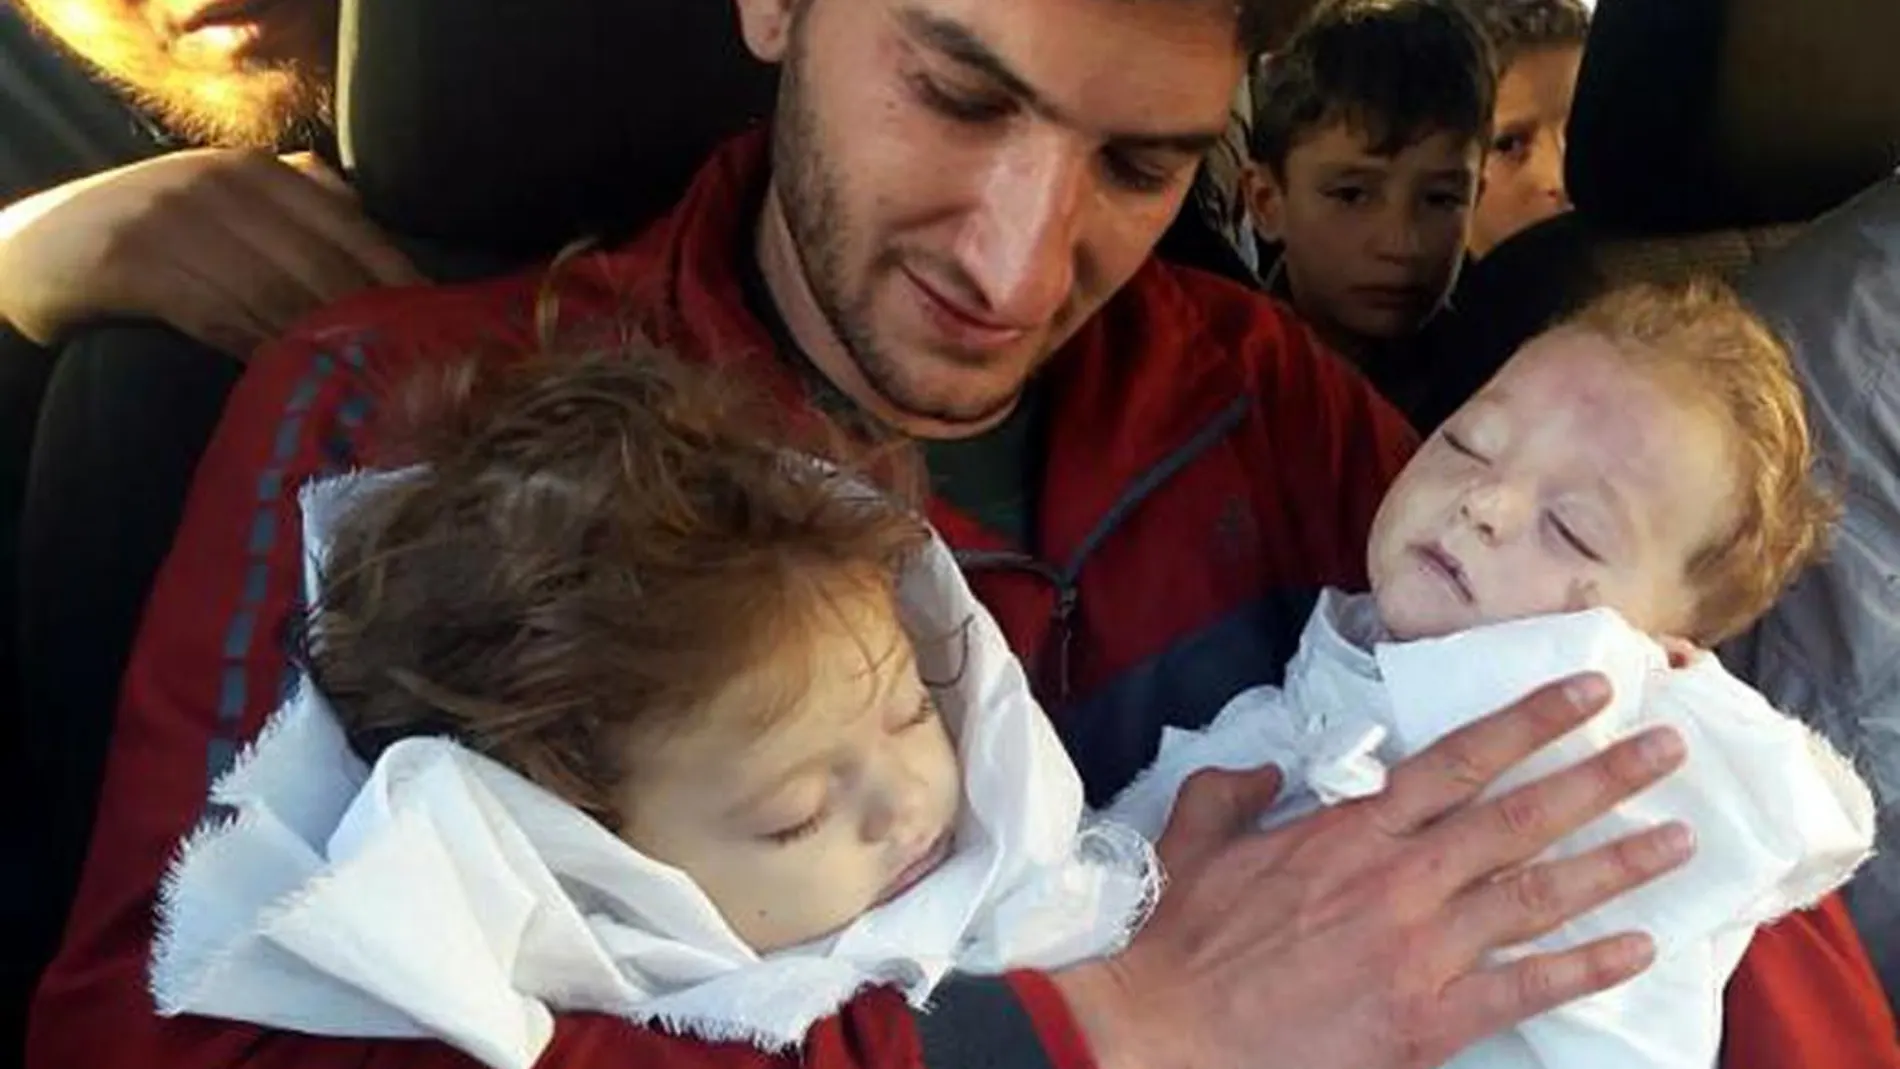 Las imágenes de un padre sosteniendo en brazos a sus hijos gemelos muertos en Siria conmocionan a las redes